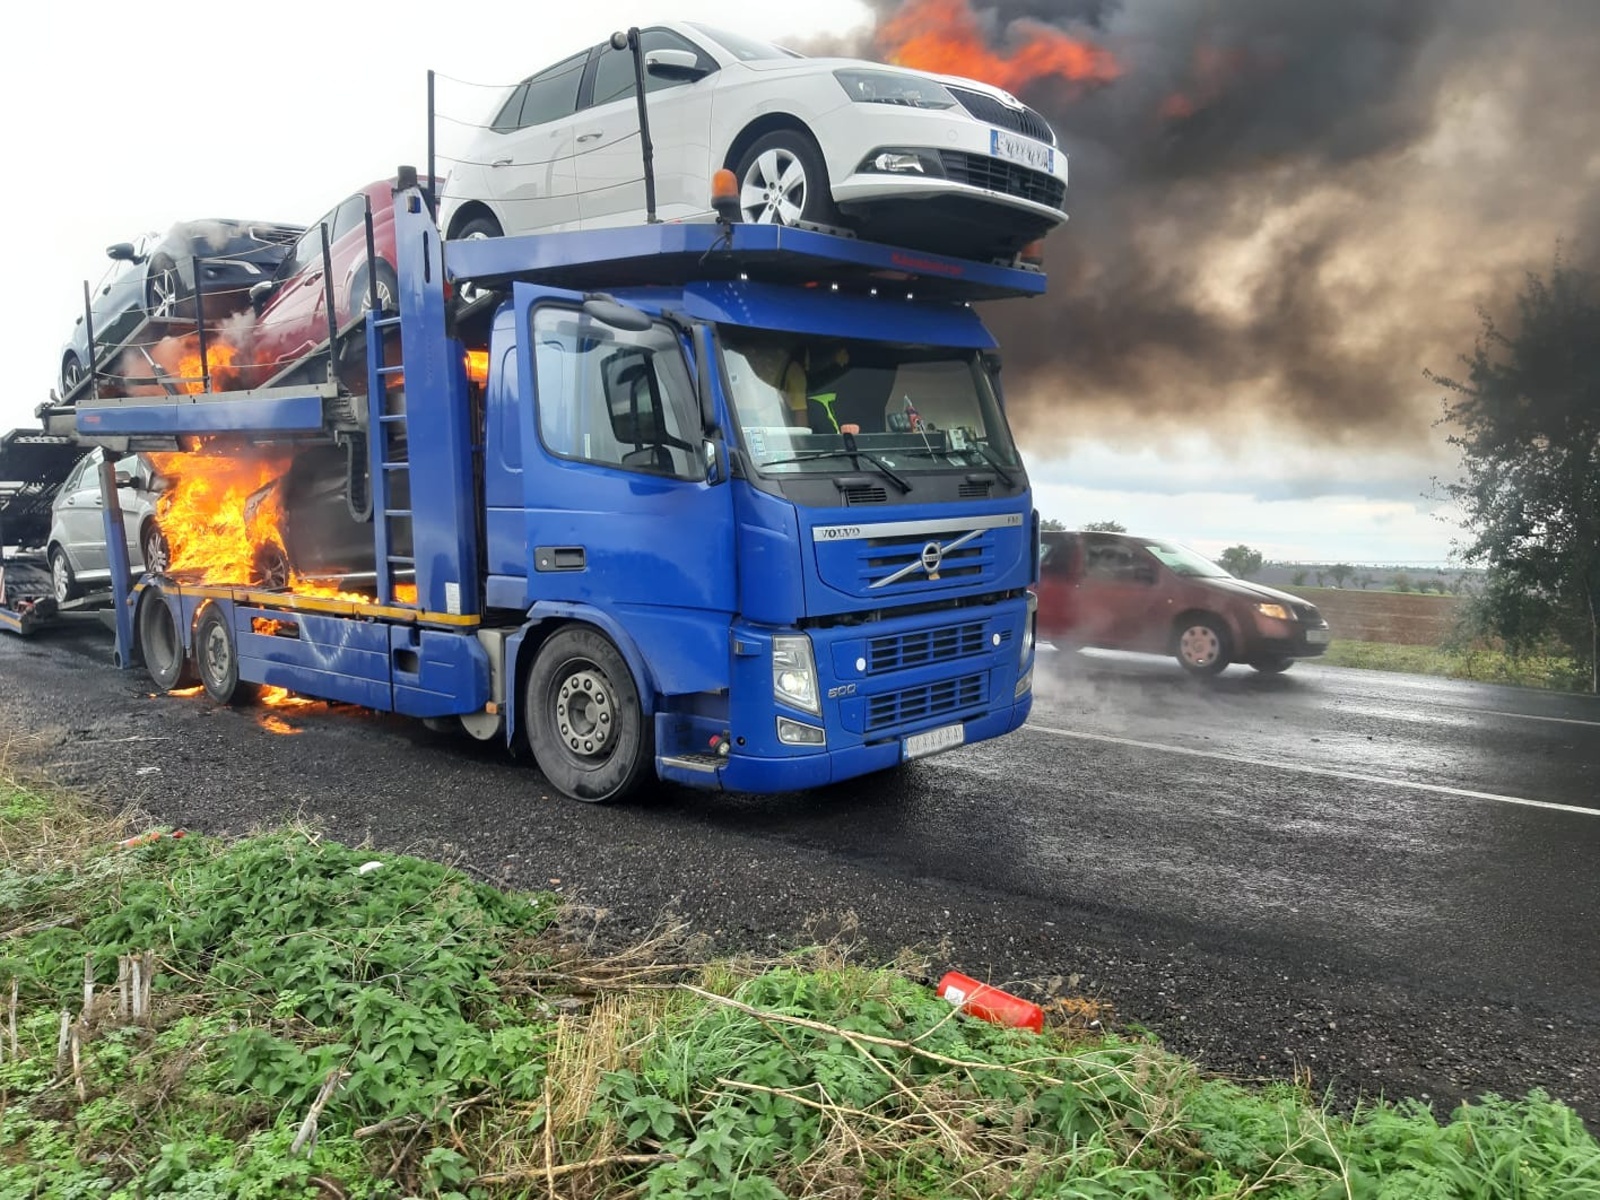 005-Požár soupravy s přepravovanými osobními vozidly.jpg